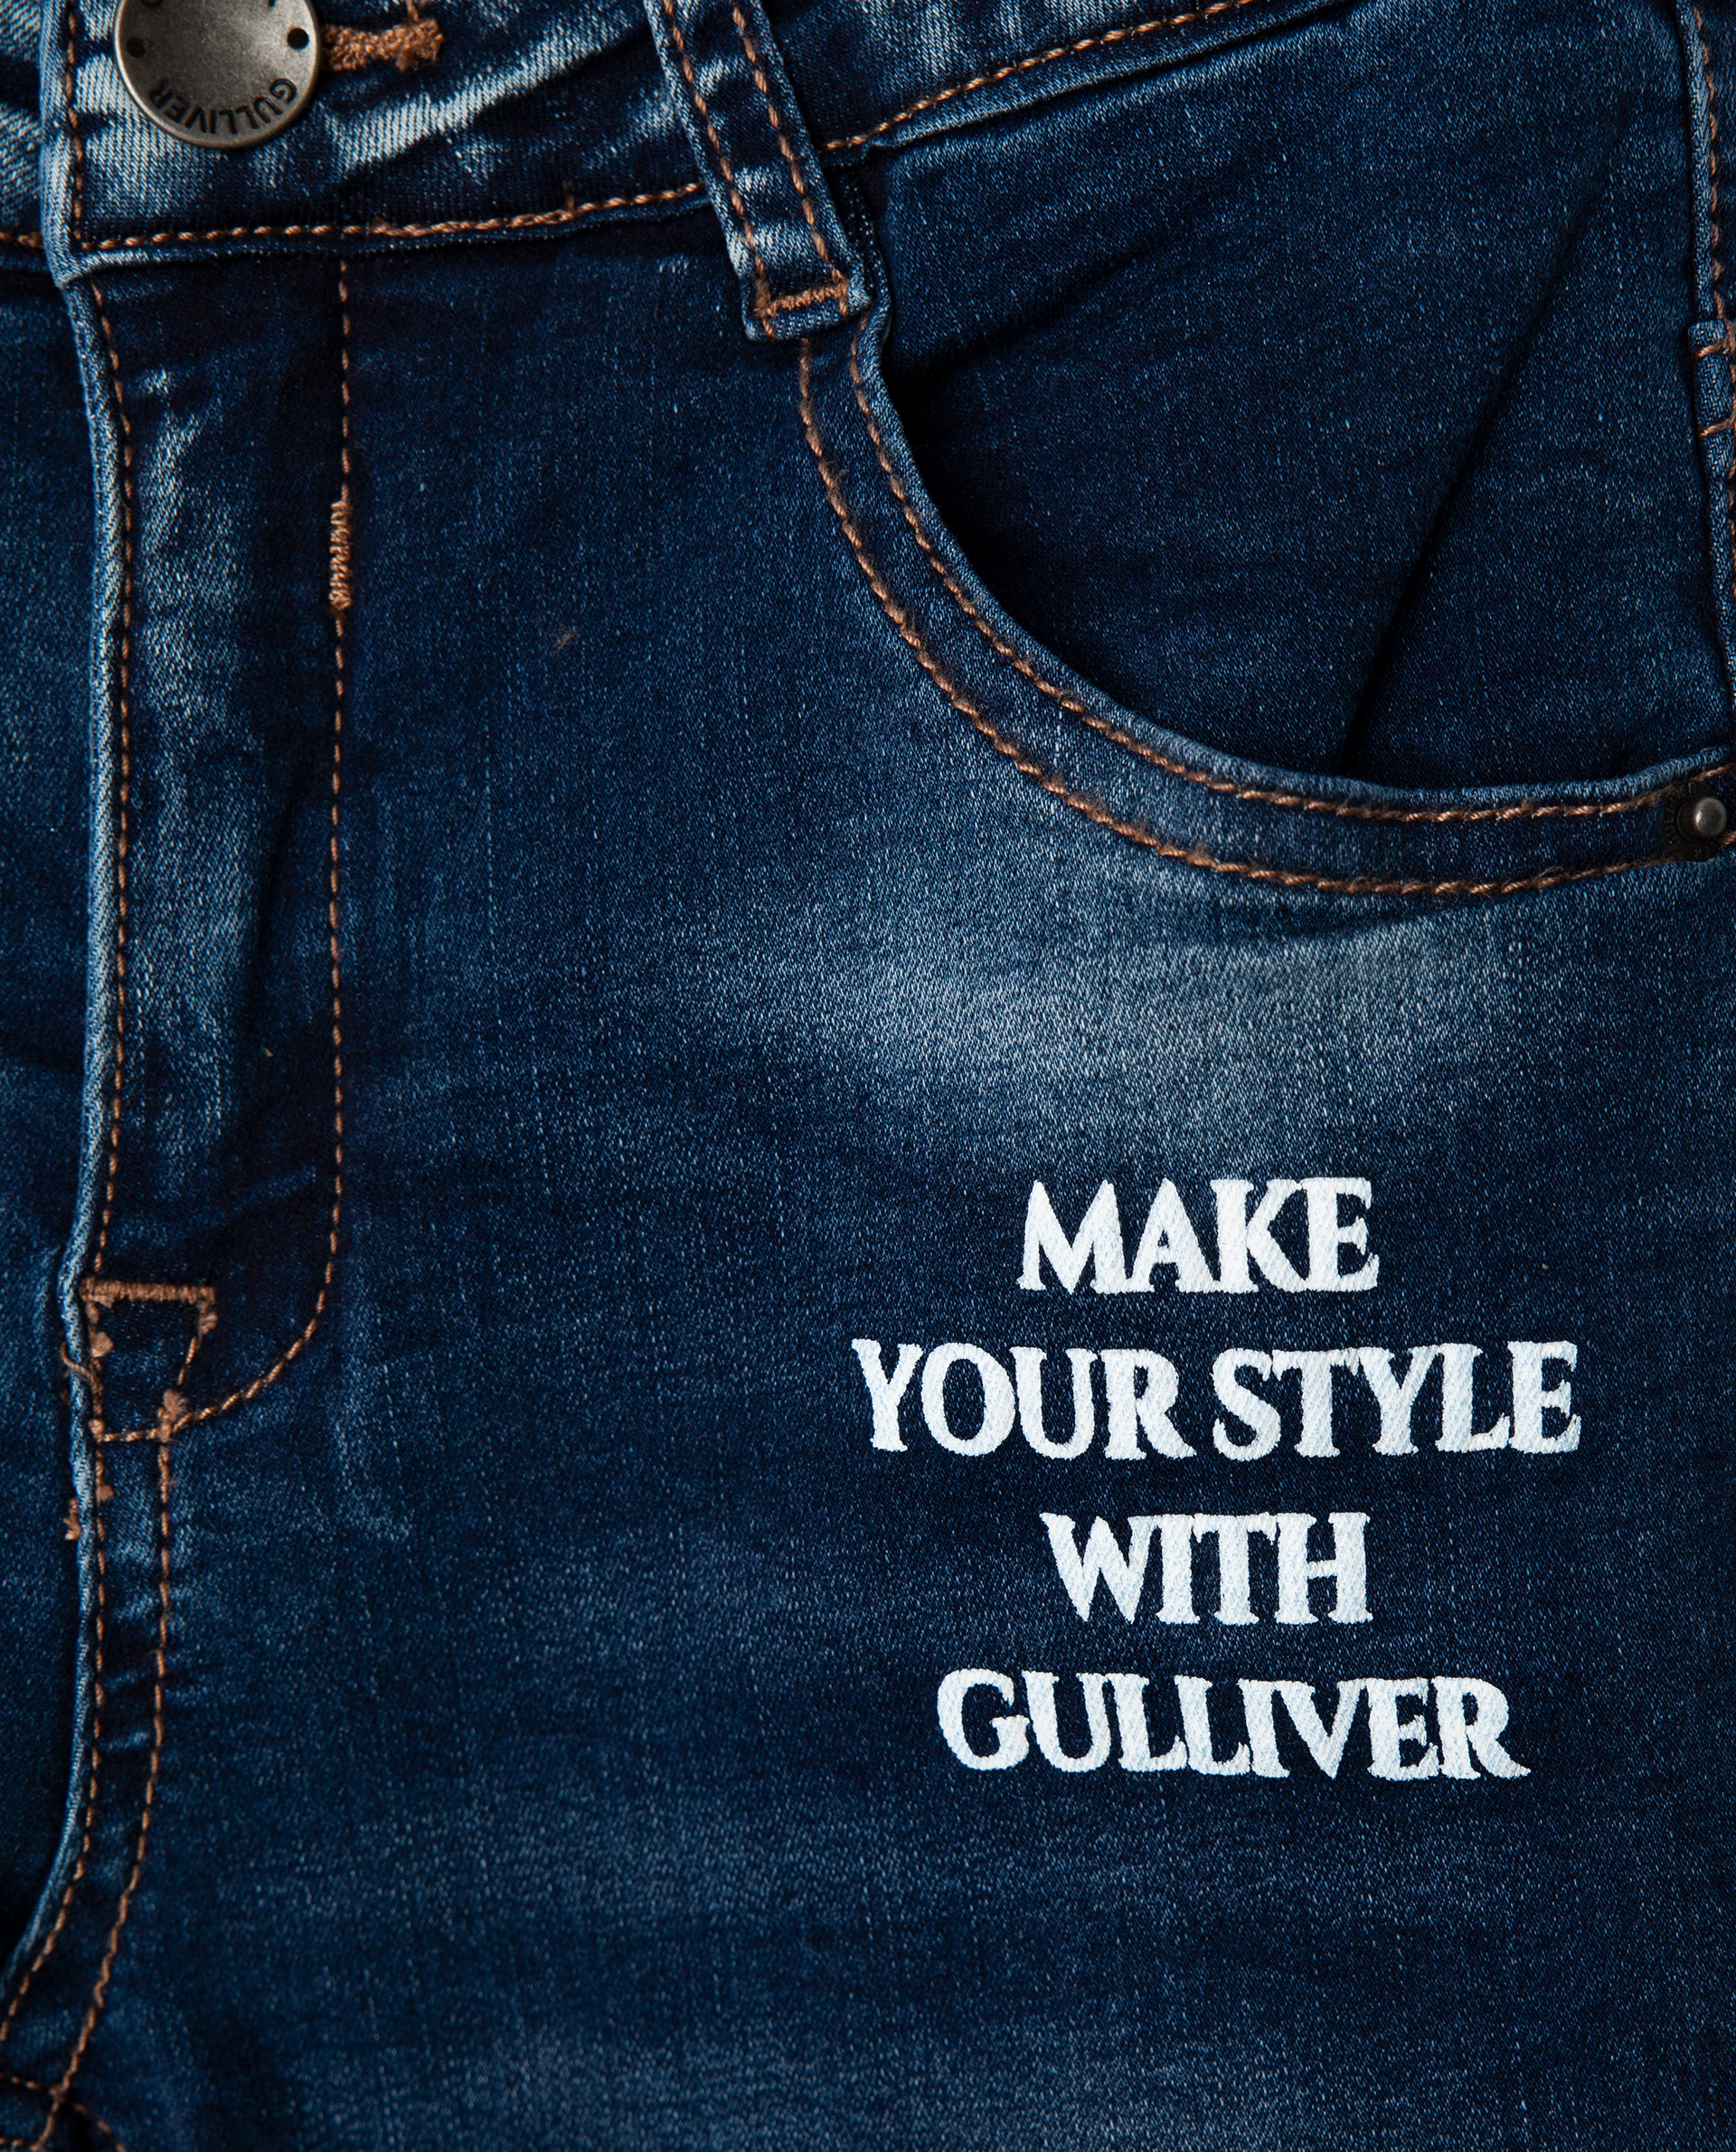 Голубые джинсы утепленные Gulliver 22002GMC6402, размер 98, цвет голубой regular fit / прямые - фото 3